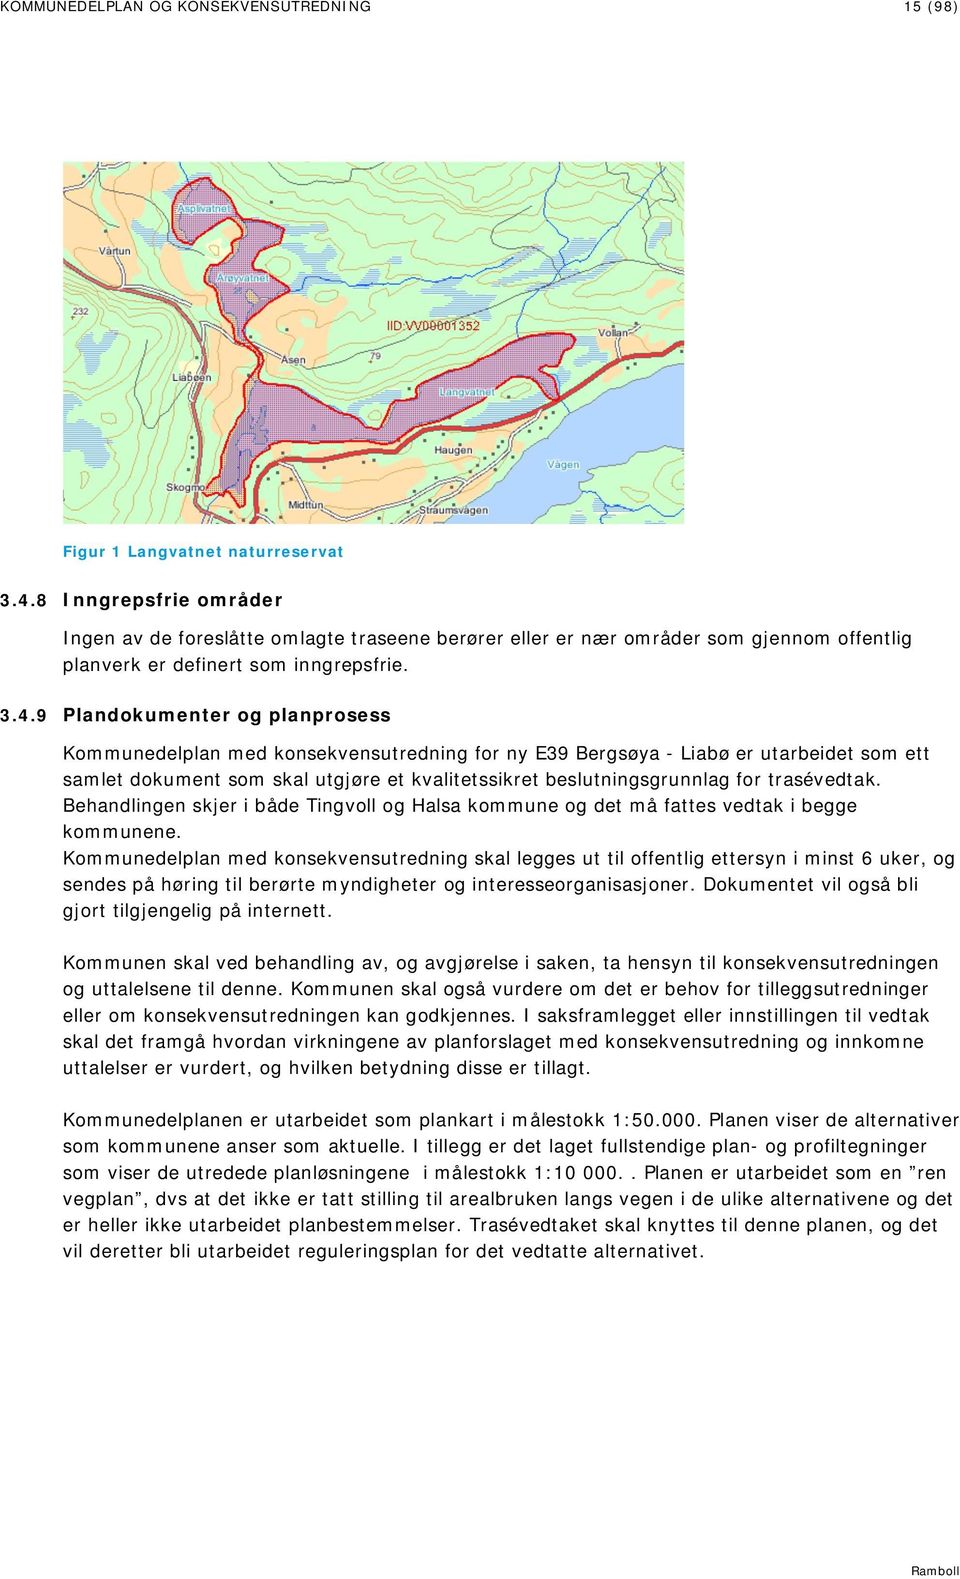 9 Plandokumenter og planprosess Kommunedelplan med konsekvensutredning for ny E39 Bergsøya - Liabø er utarbeidet som ett samlet dokument som skal utgjøre et kvalitetssikret beslutningsgrunnlag for